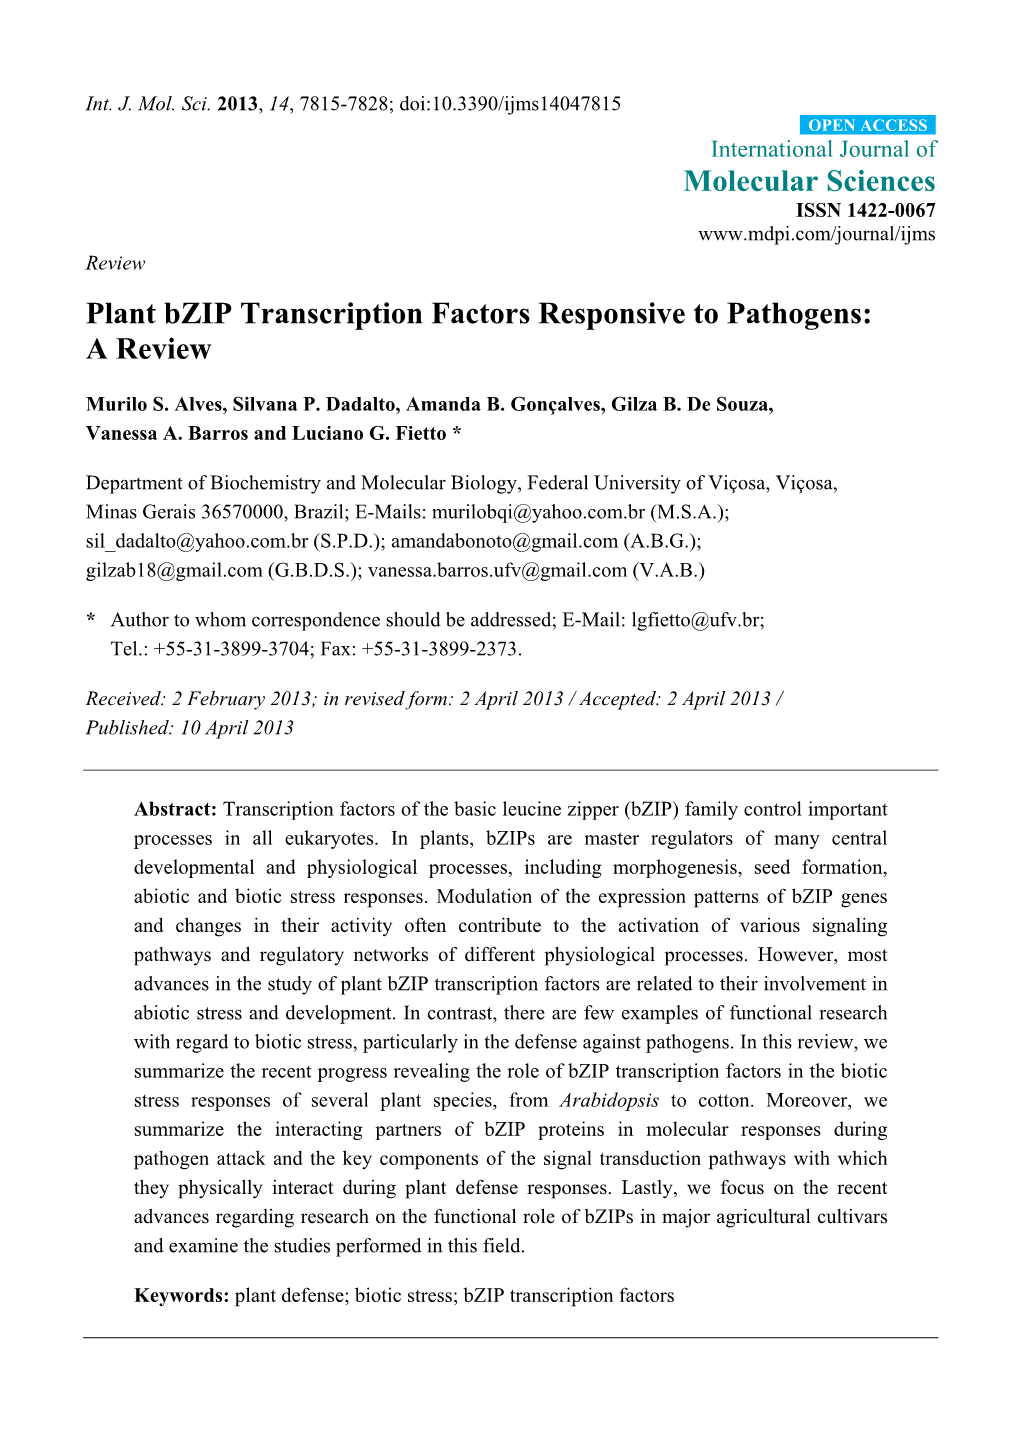 Plant Bzip Transcription Factors Responsive to Pathogens: a Review